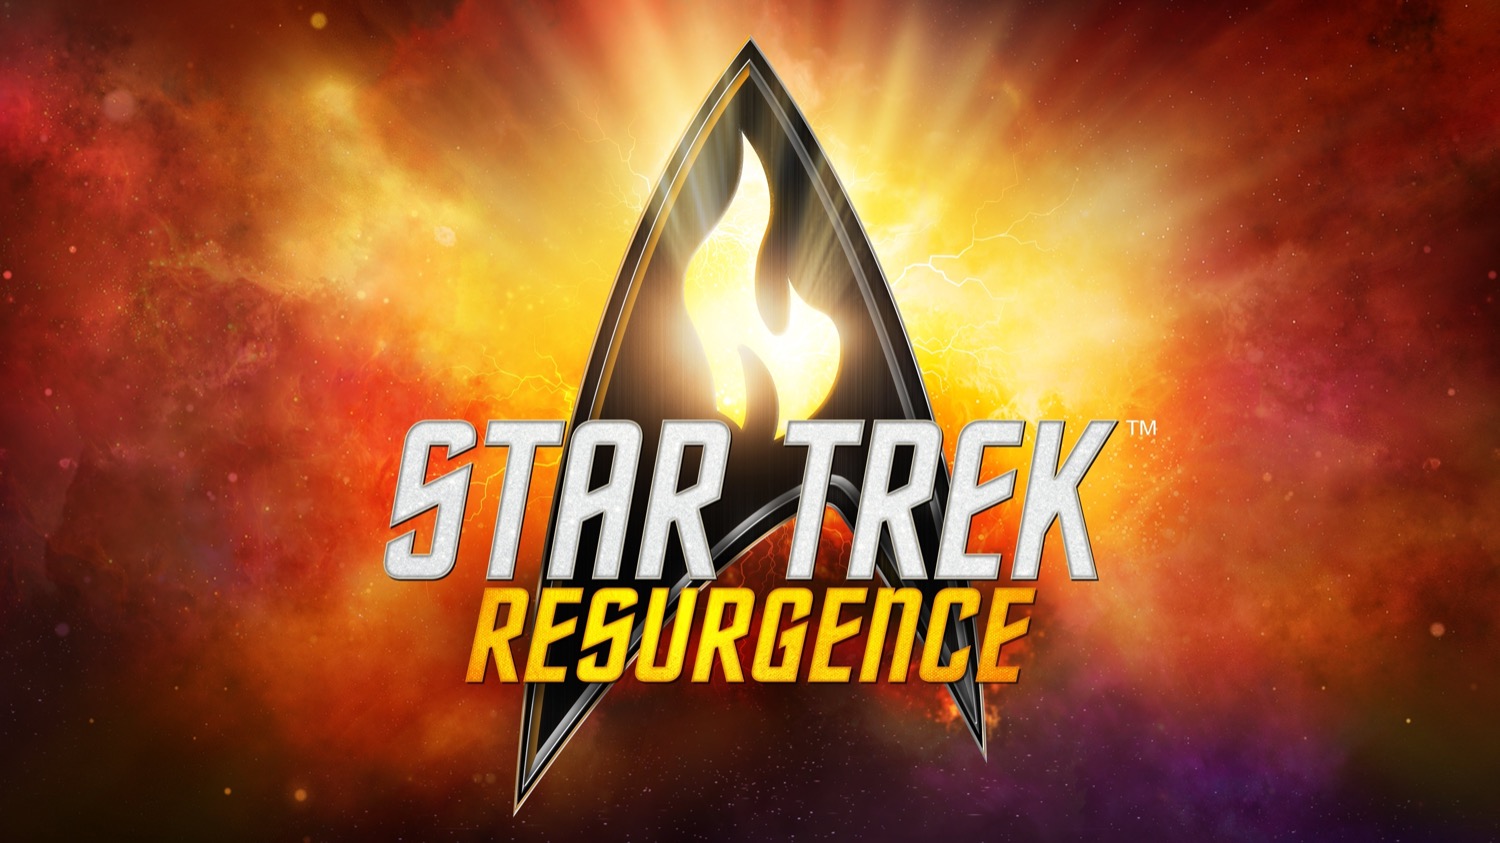 Релиз Star Trek: Resurgence на приставках Xbox состоится 23 мая: с сайта NEWXBOXONE.RU